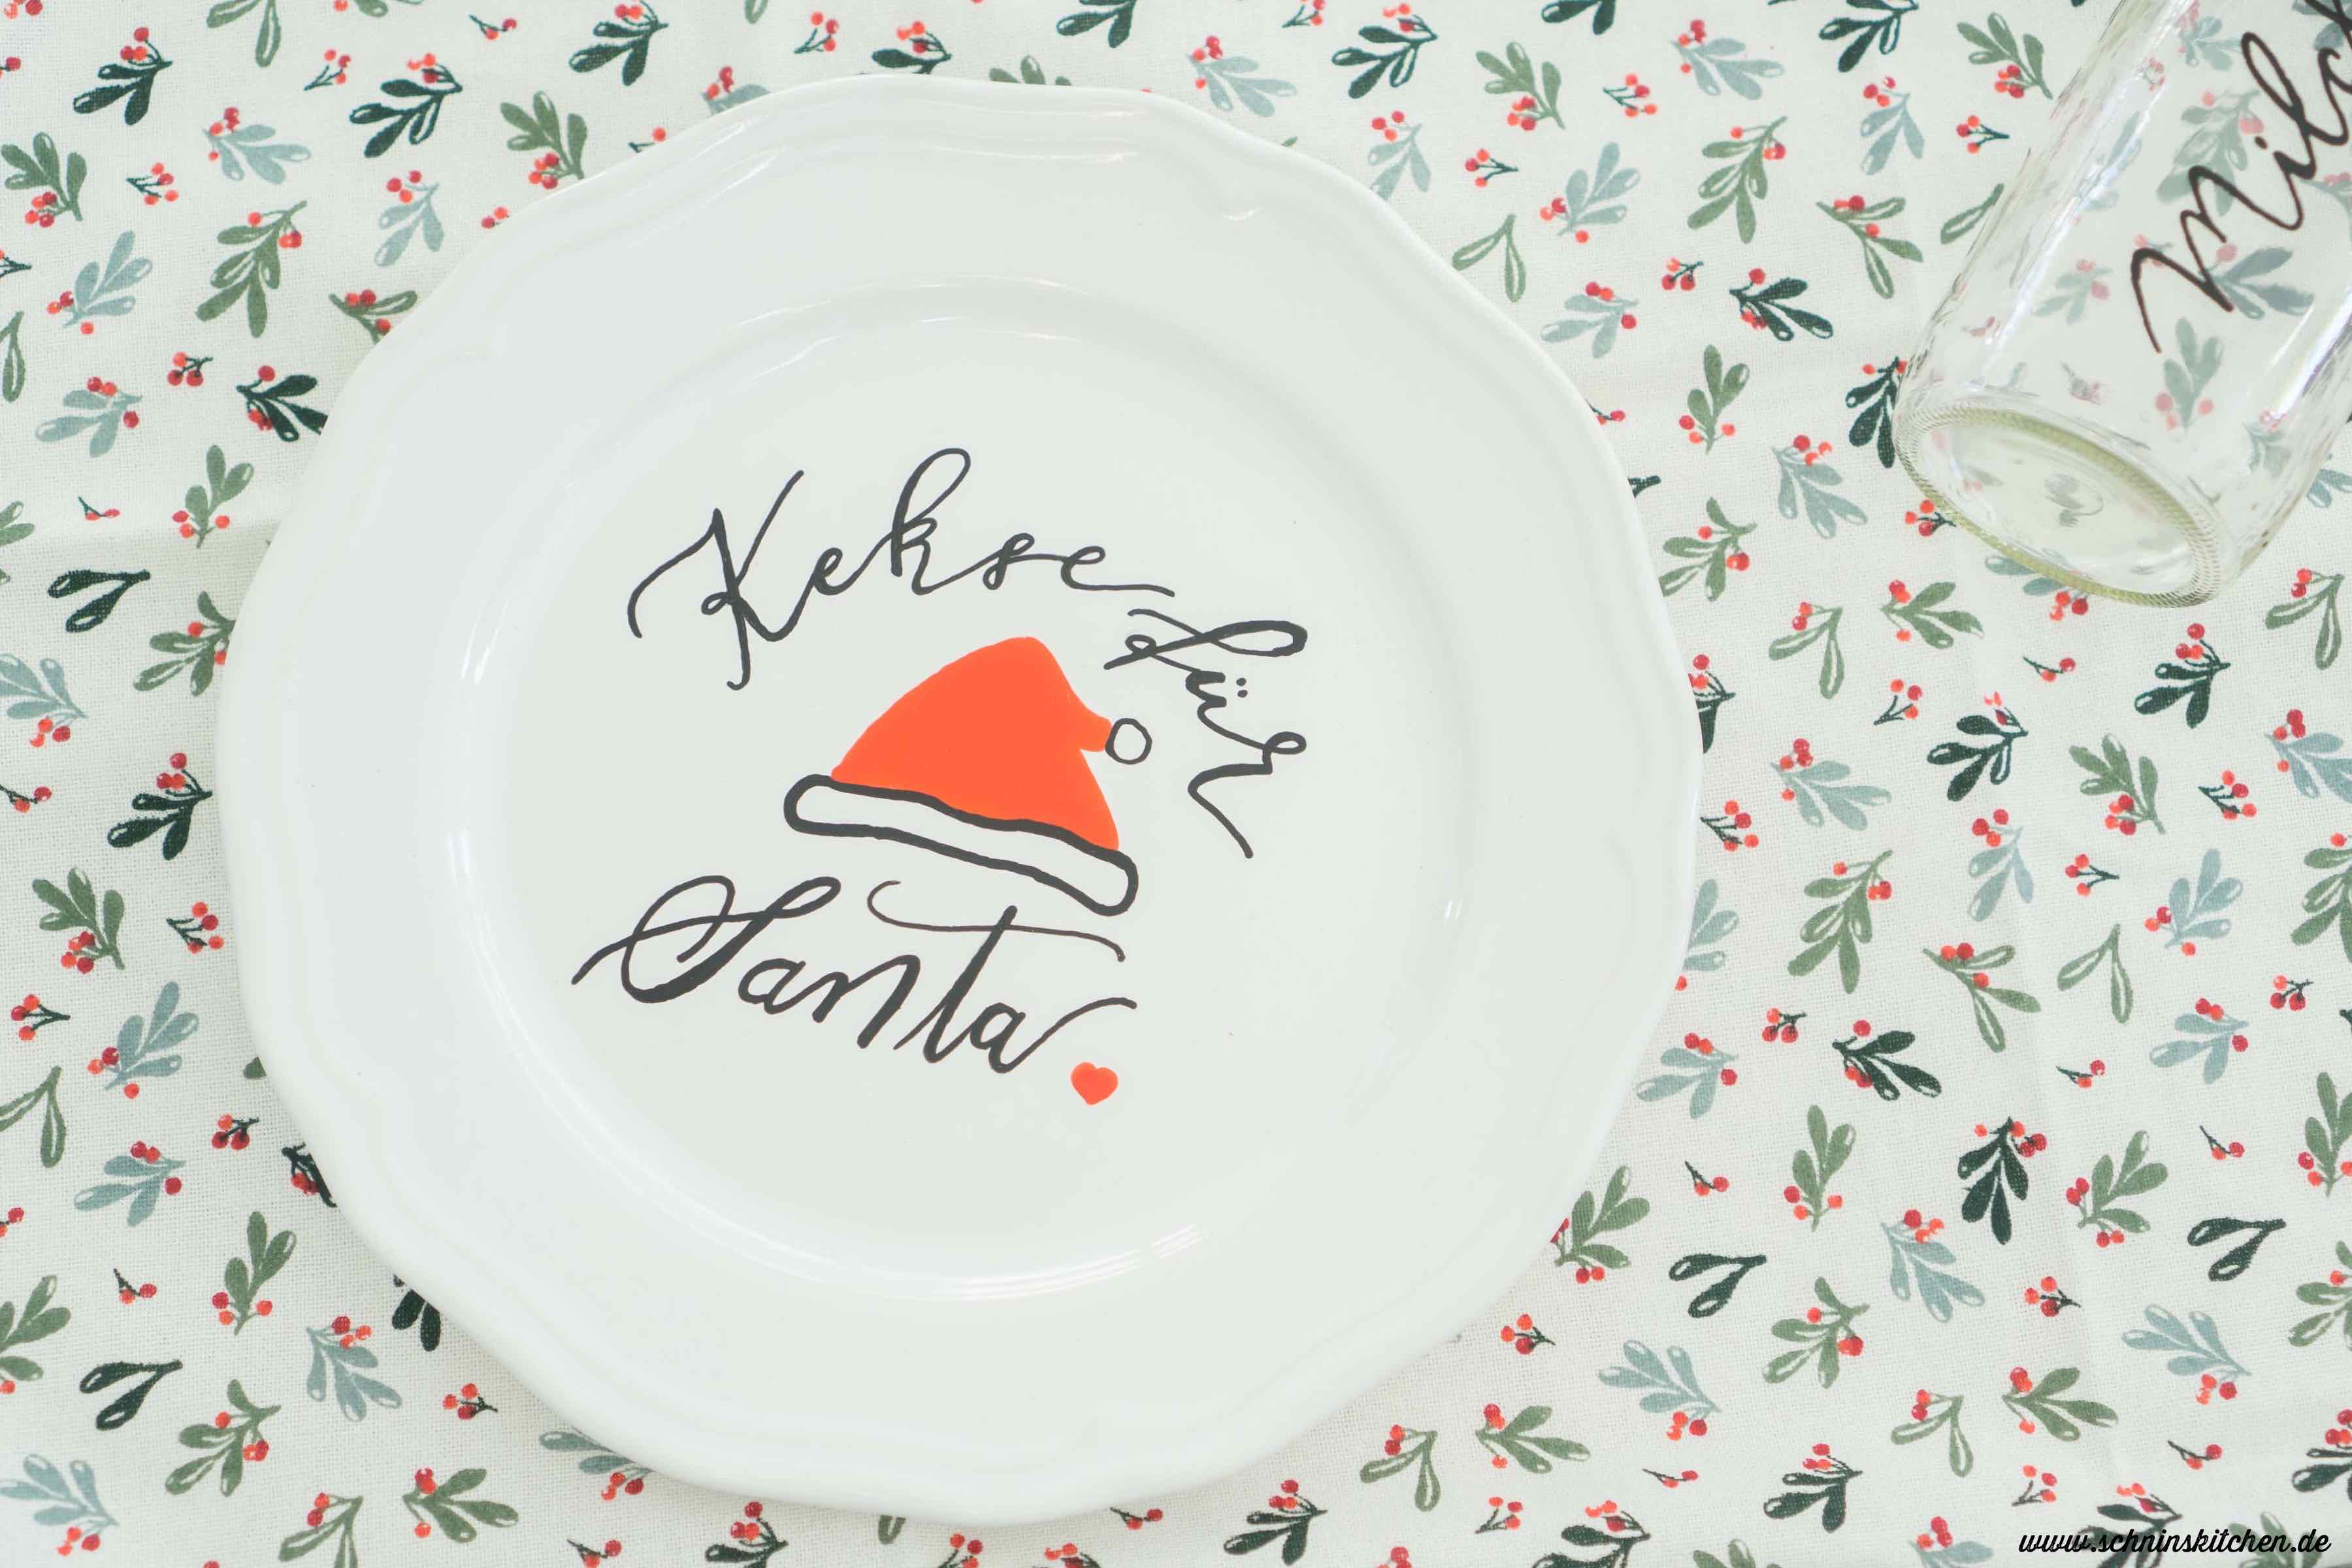 DIY Kekse für den Weihnachtsmann (Cookies for Santa) - Geschirr bemalen mit Lettering | www.schninskitchen.de